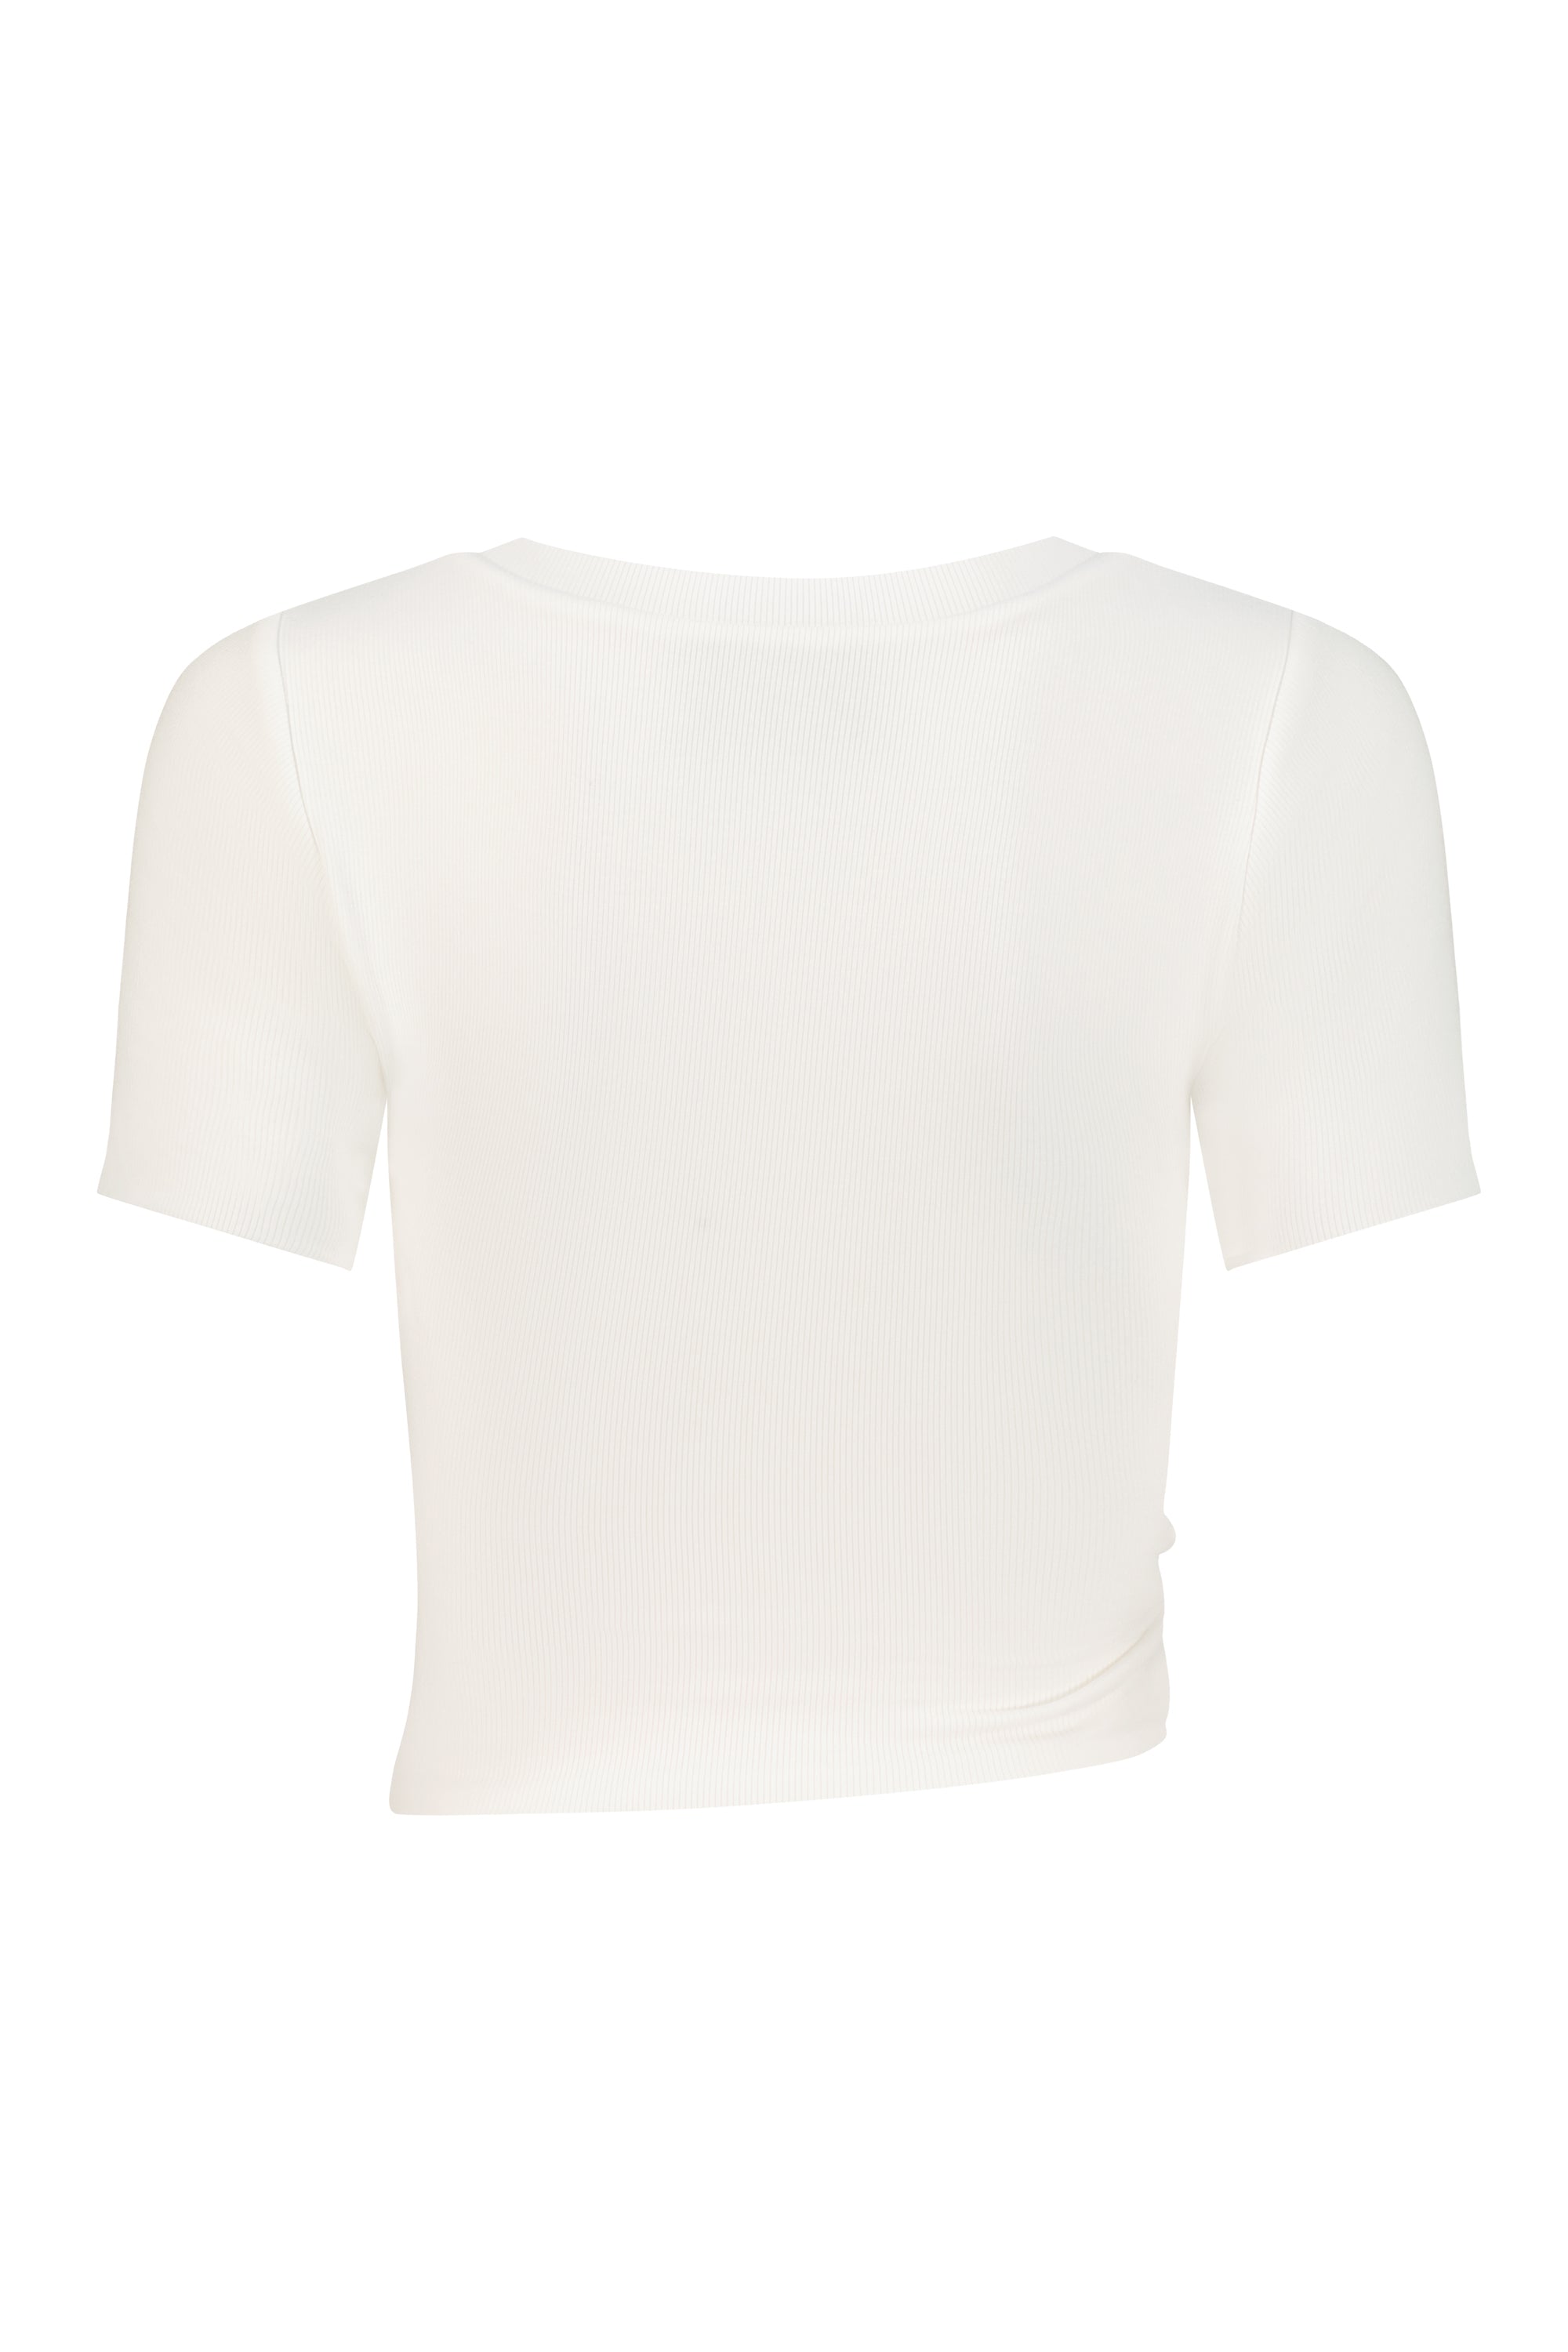 Selene T-Shirt White